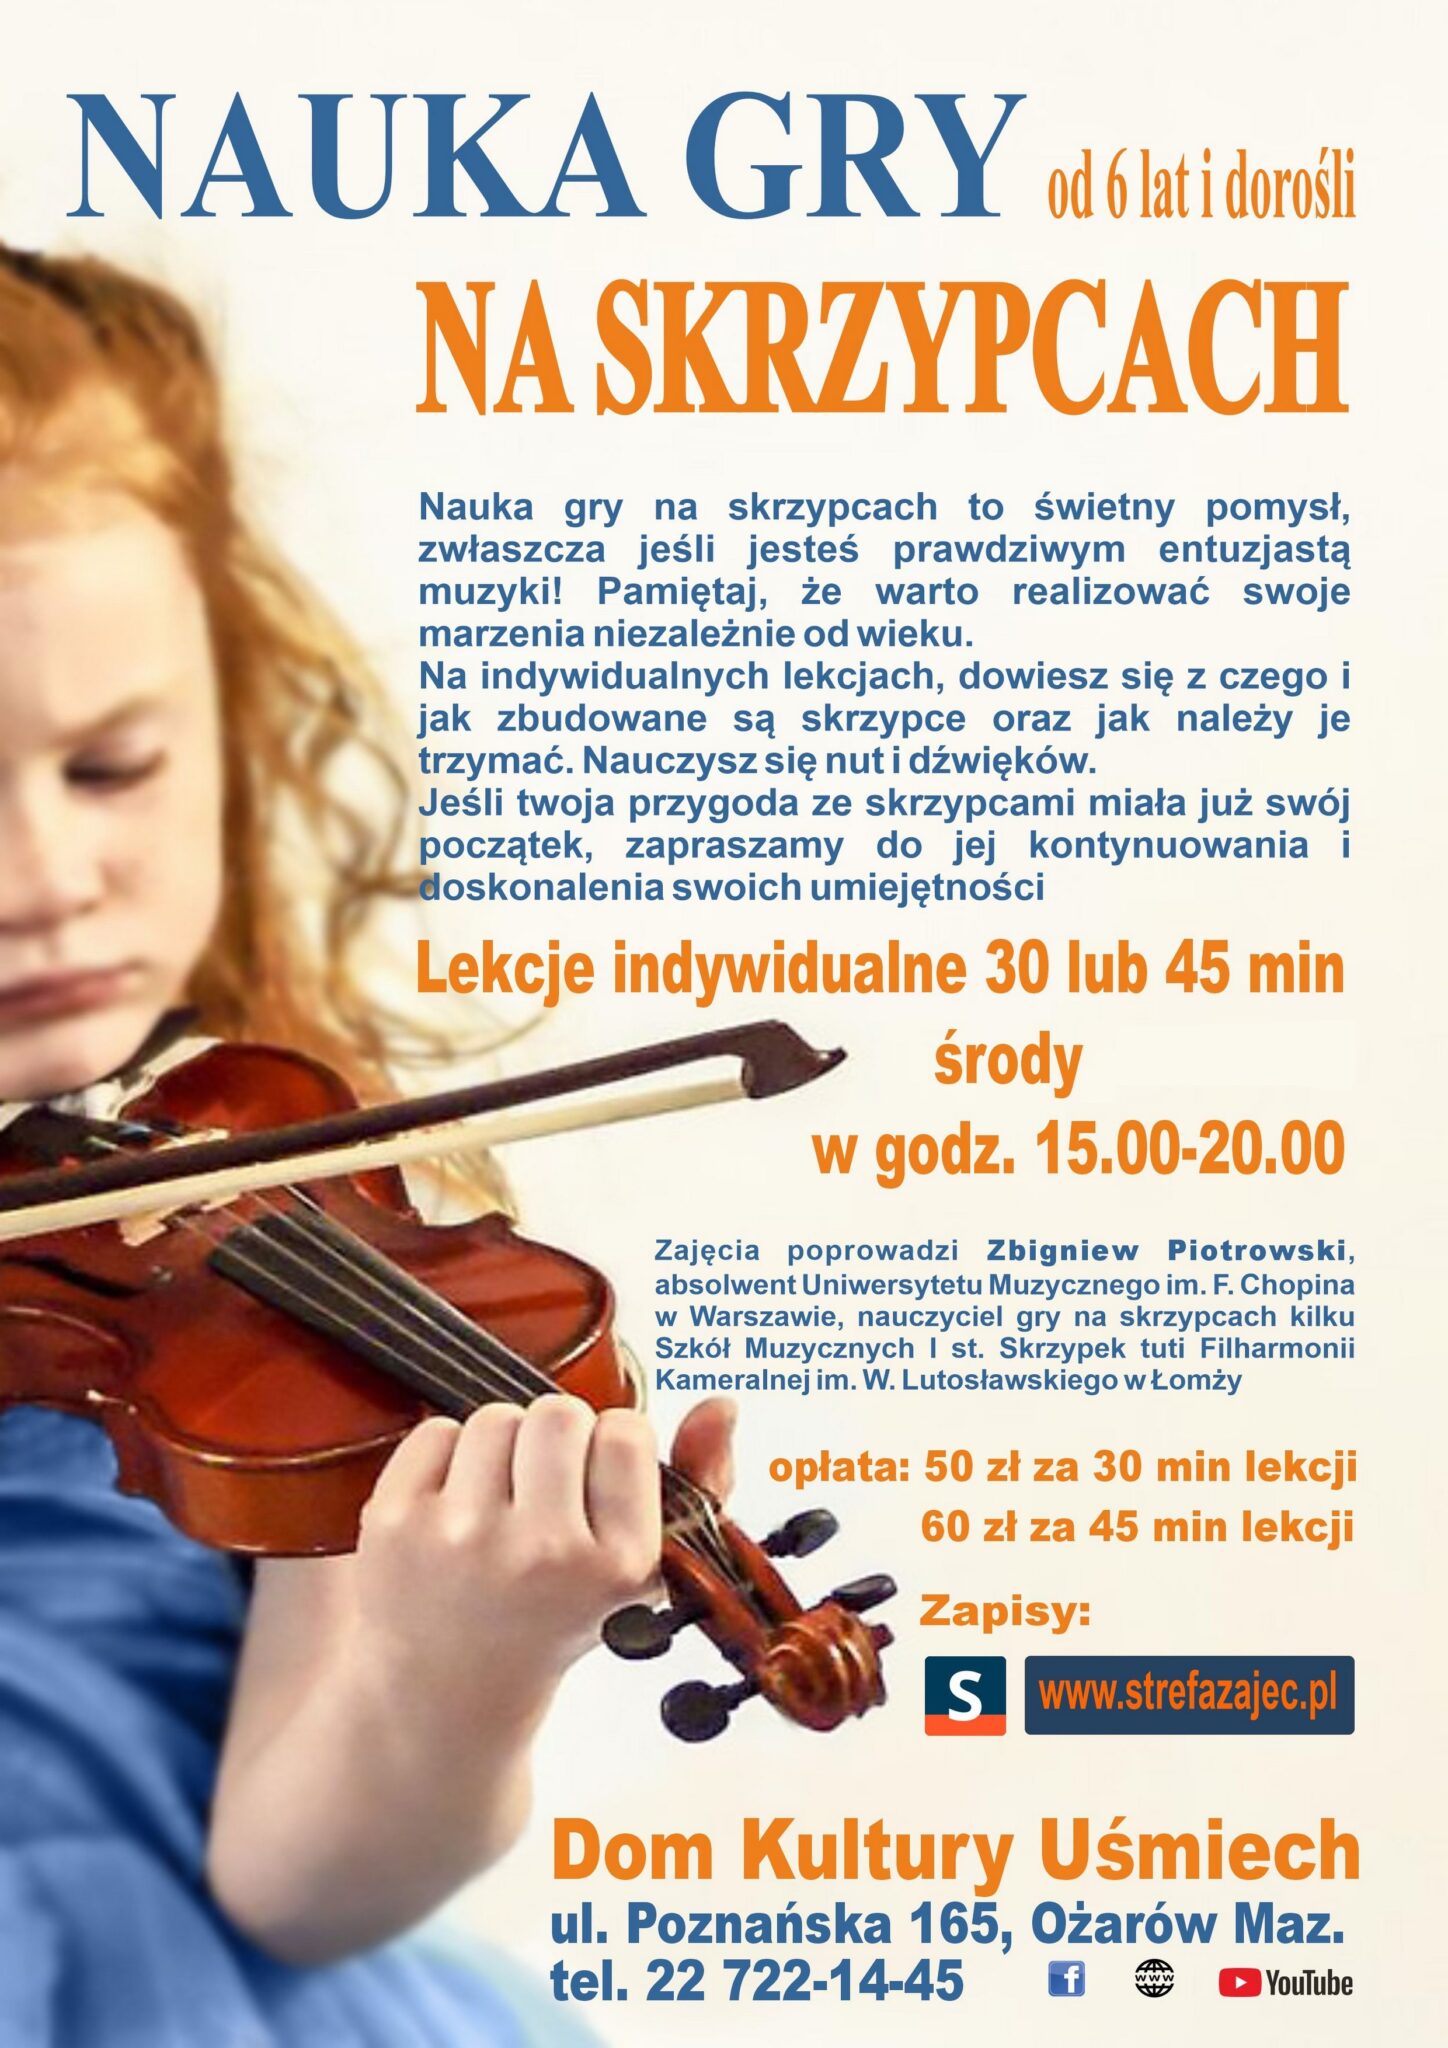 Plakat informacyjny o zajęciach nauki gry na skrzypcach